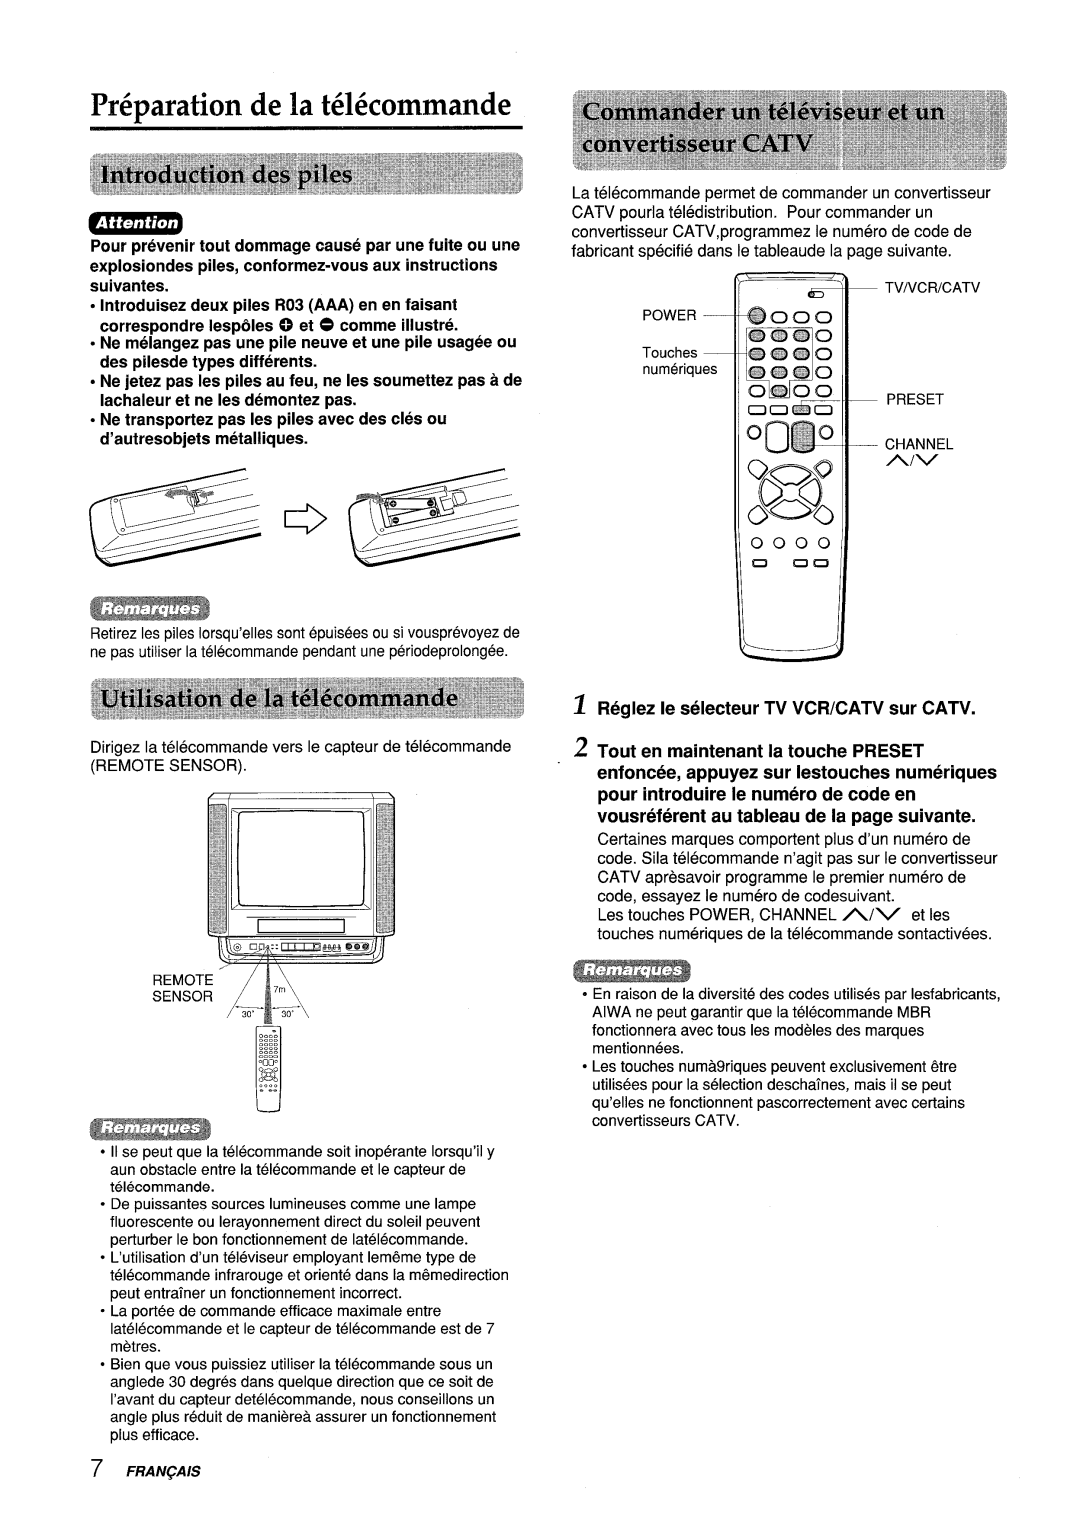 Aiwa VX-S135U, VX-S205U manual Preparation de la t616commande, Reglez Ie selecteur TV VCR/CATV sur CATV 